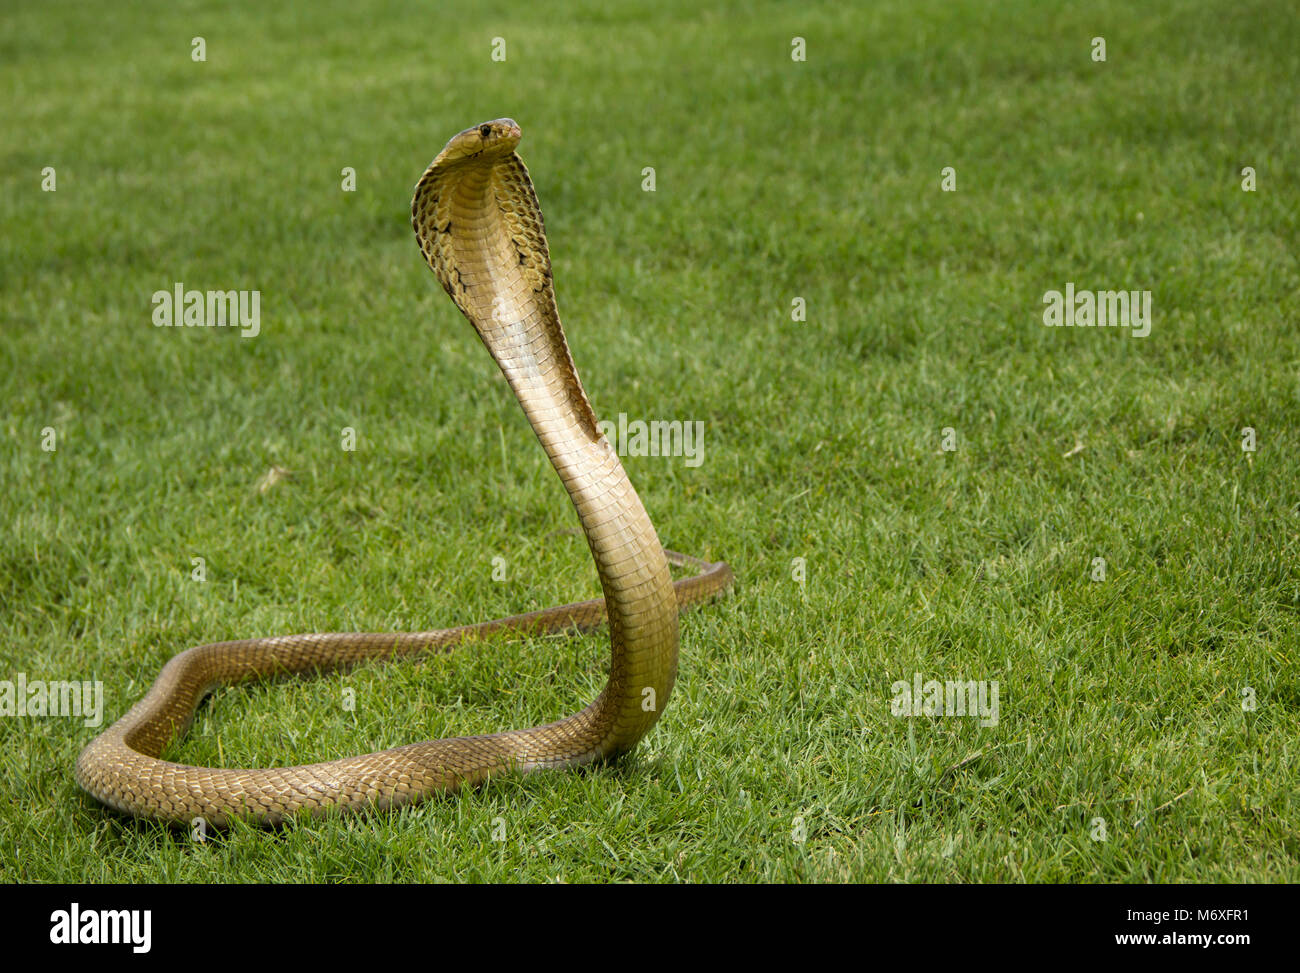 Adquisición Dinamarca naranja Green cobra snake hi-res stock photography and images - Alamy